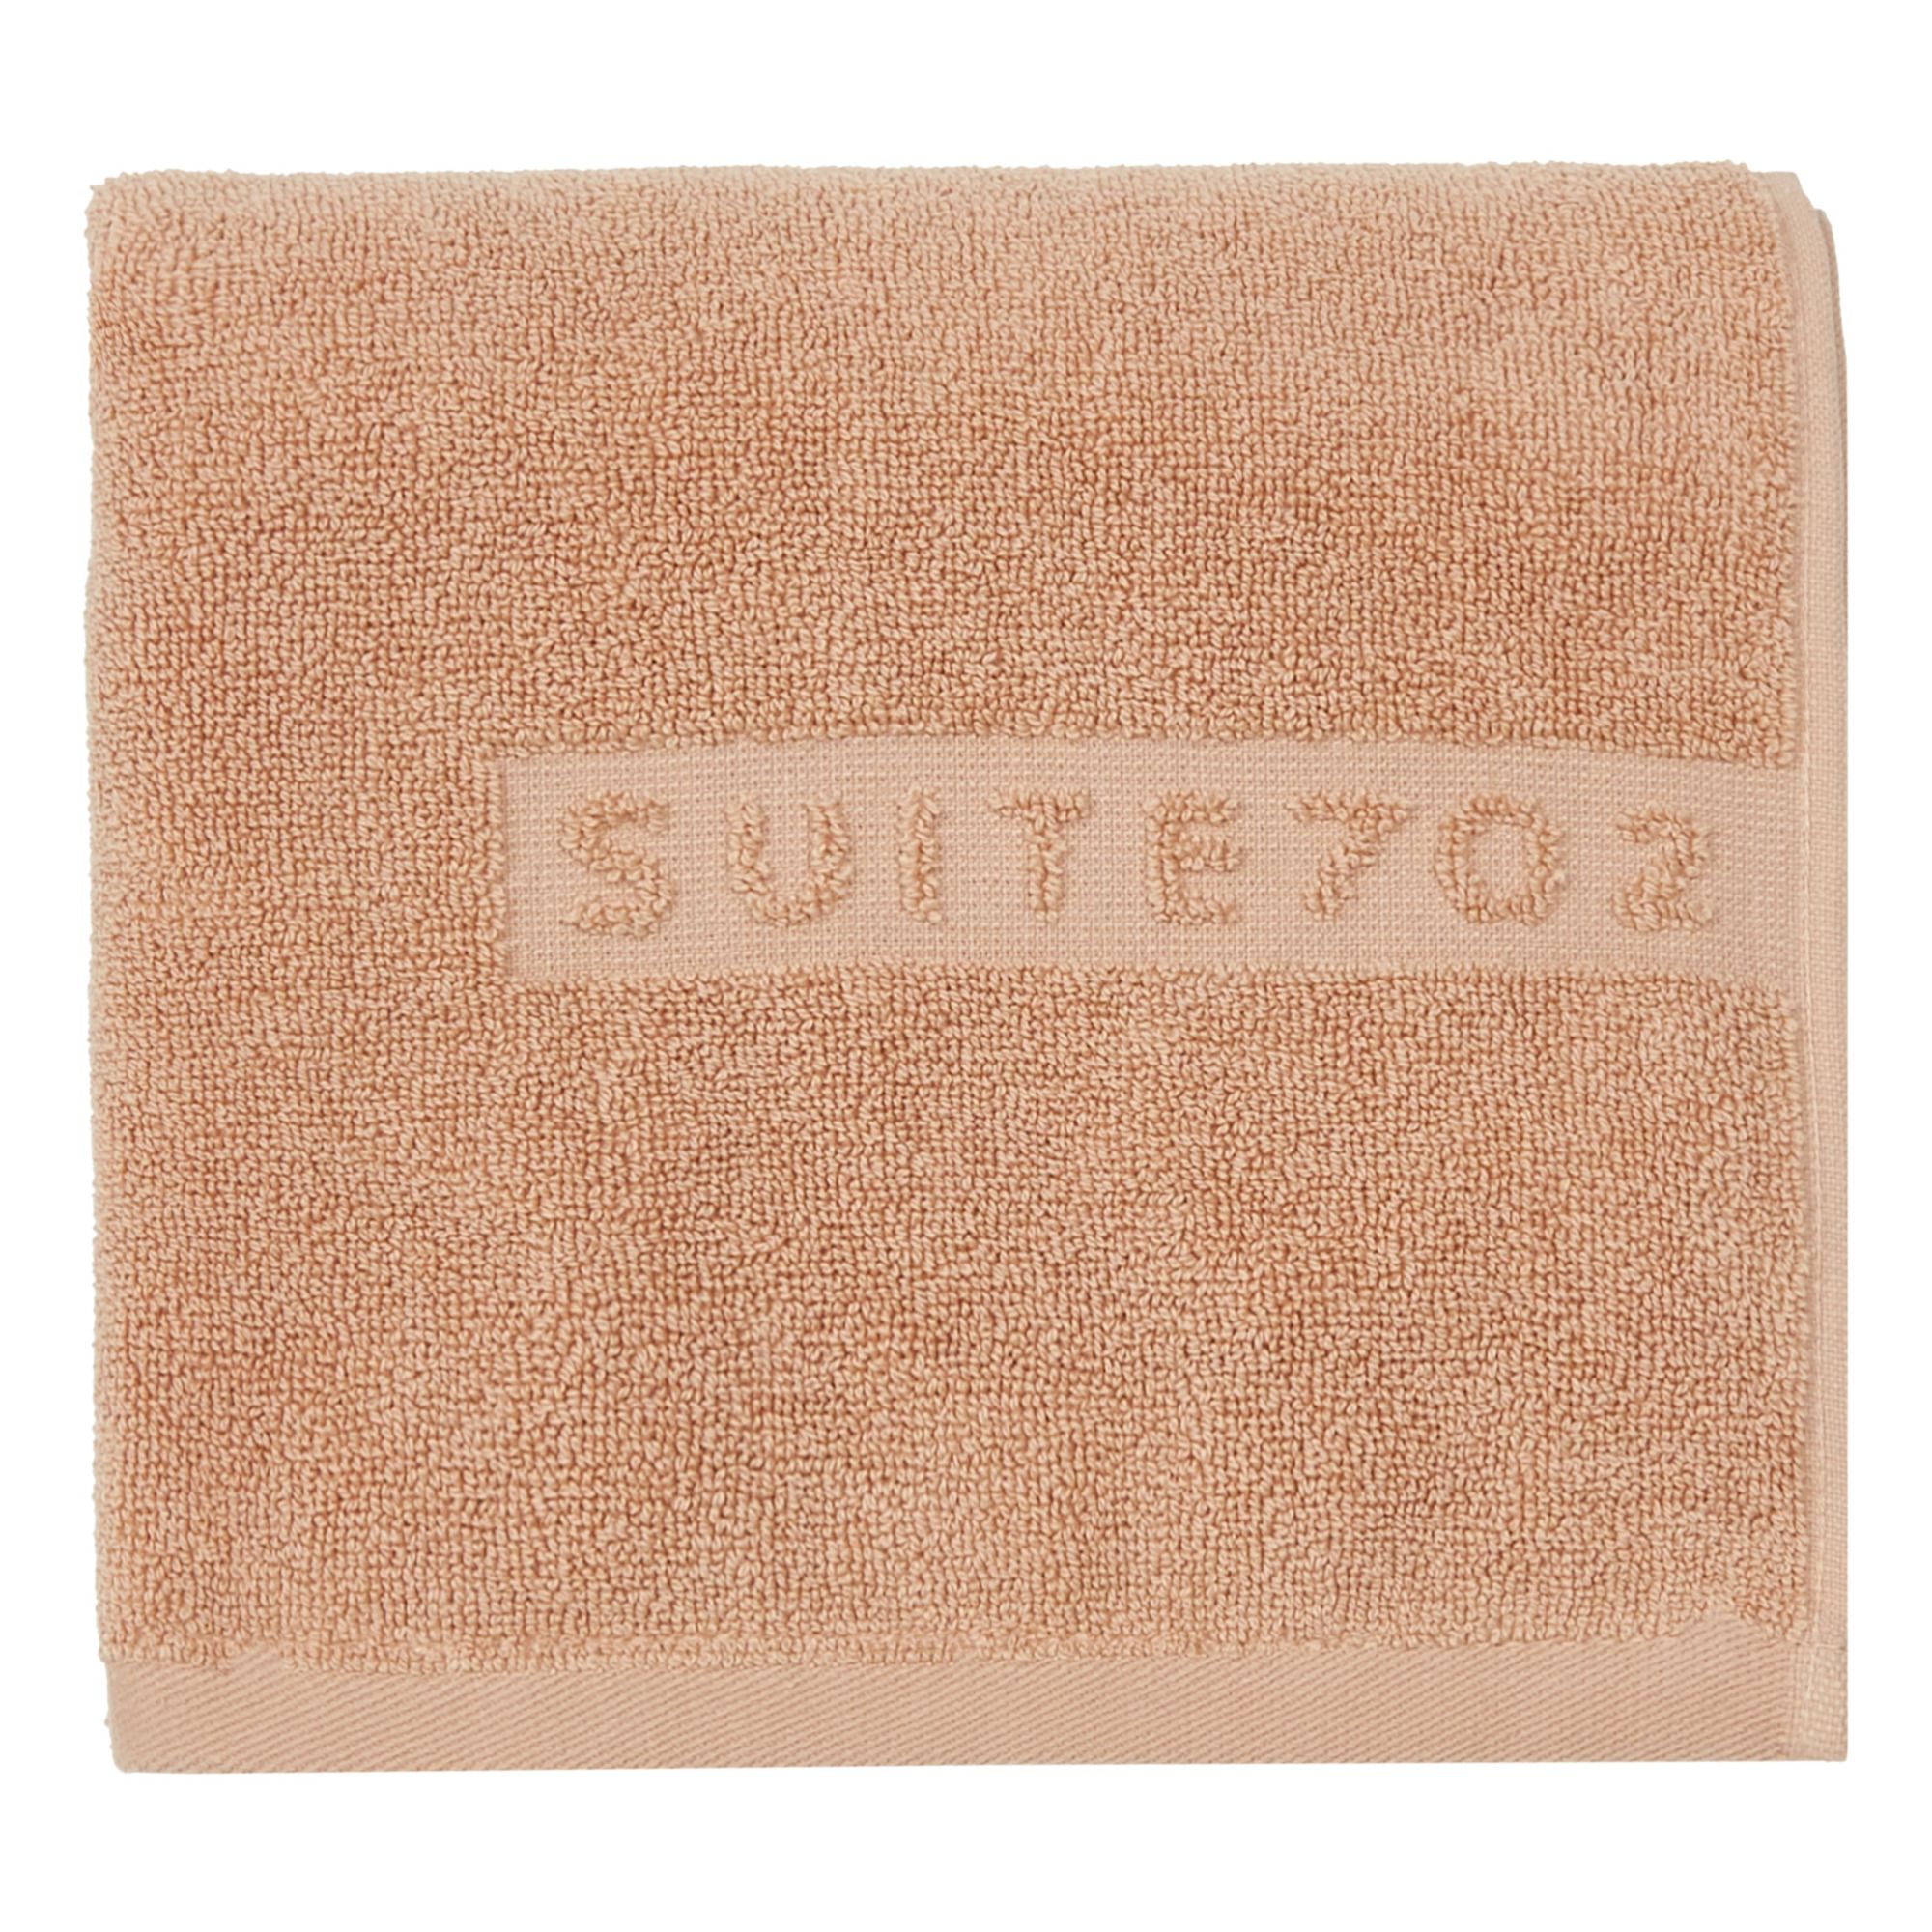 Suite 702 - Serviette de toilette en coton bio - Blush